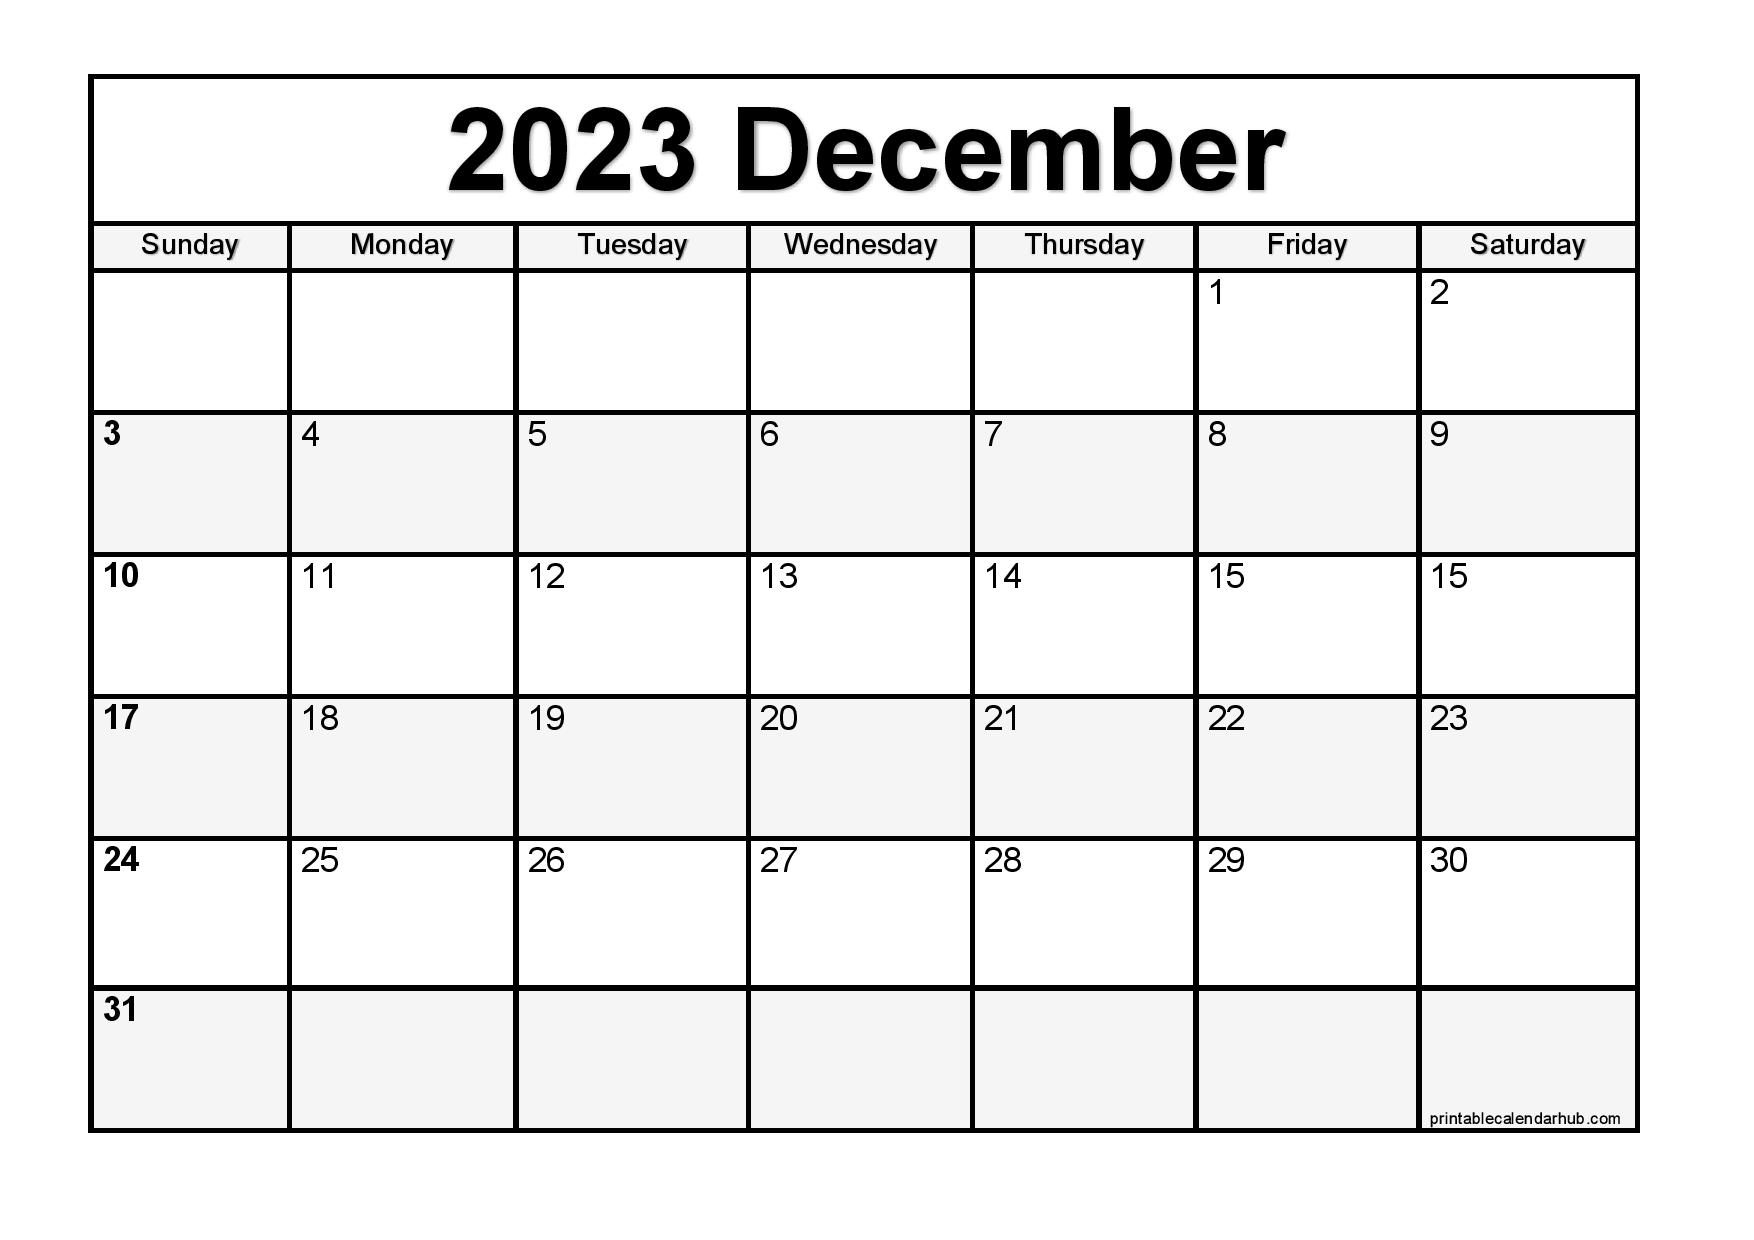 december-2023-printable-calendar-calendar-quickly-download-printable-december-2023-calendars